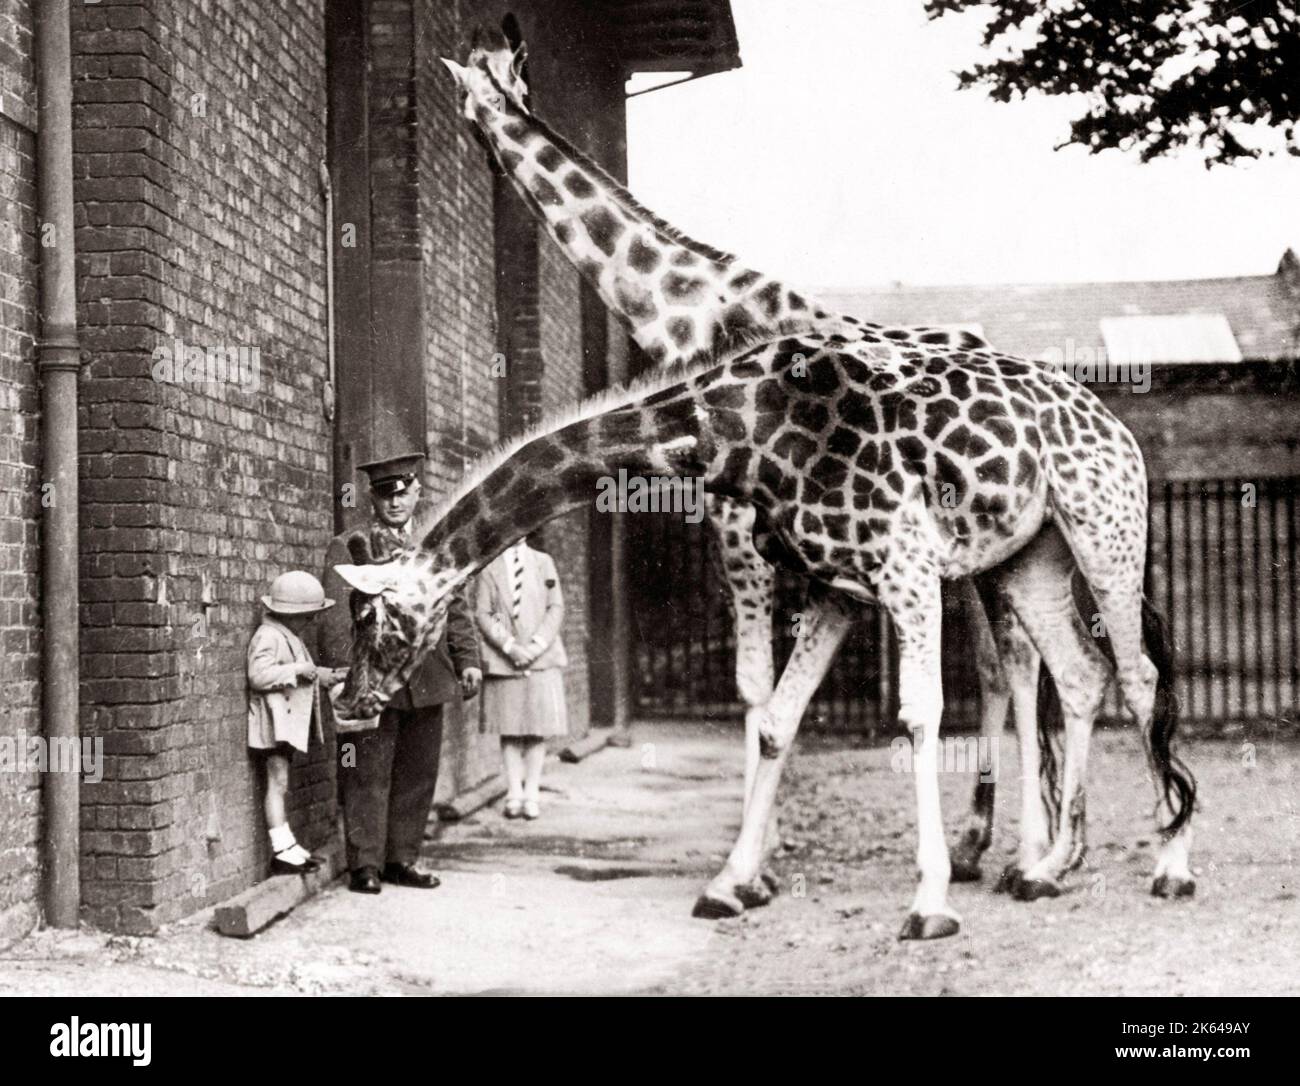 Photo de presse 1930 - nourrir les girafes au zoo de Londres. Banque D'Images